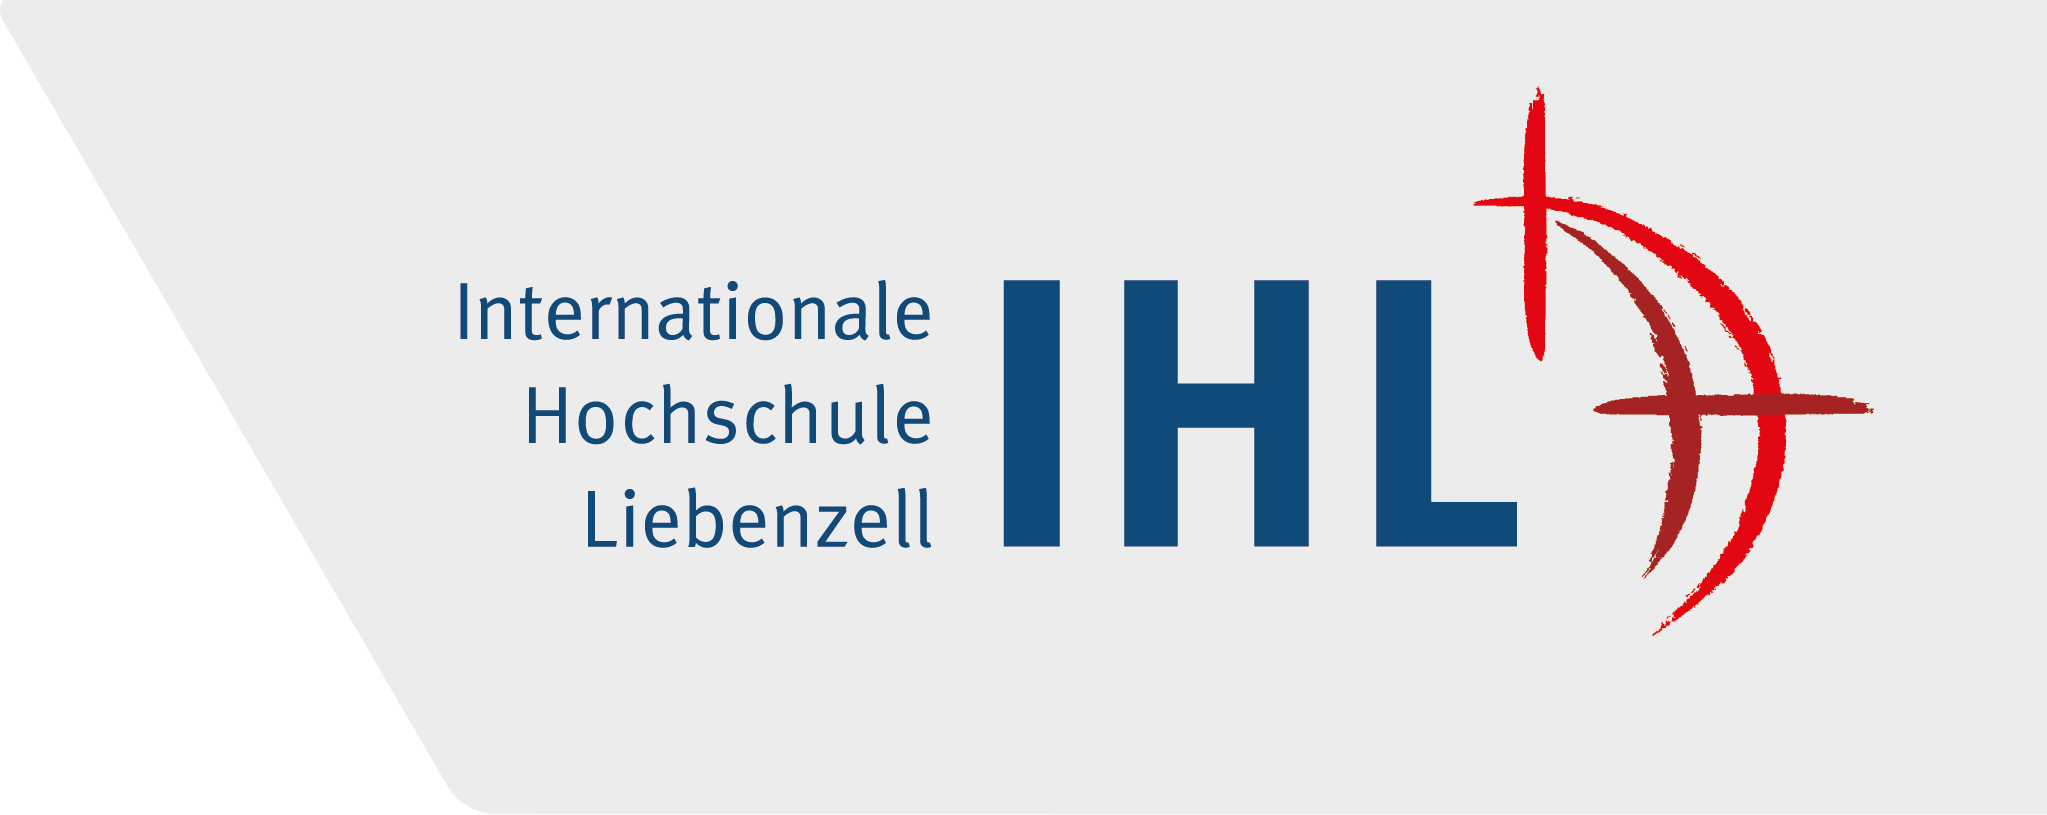 Internationale Hochschule Liebenzell